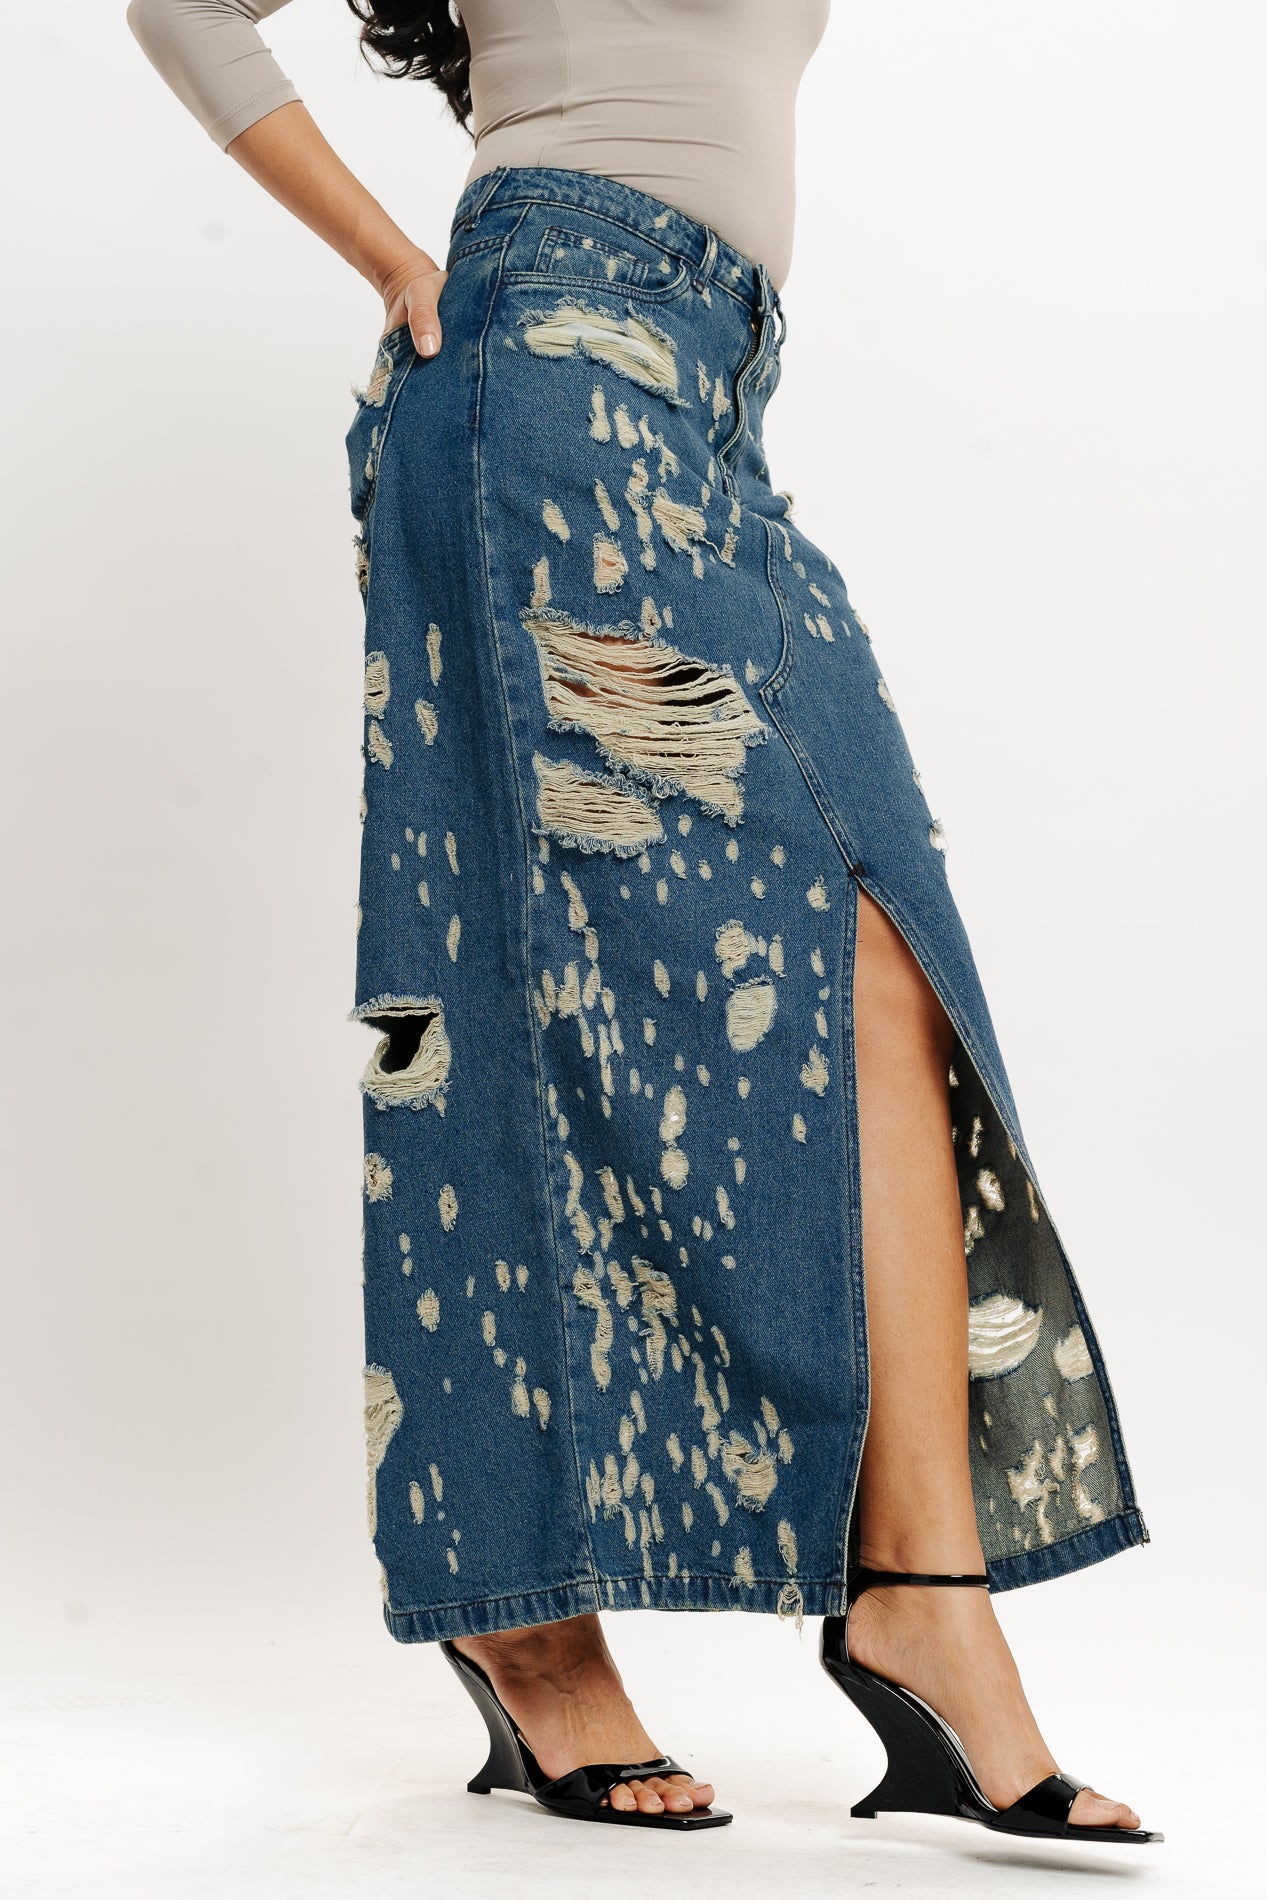 Amazon.com: UTNISAN Jean Skirt Women's High Waist Slim Fit Stretchy Bodycon  Mini Denim Skirts 012 (XS, White1, x_s) : Clothing, Shoes & Jewelry